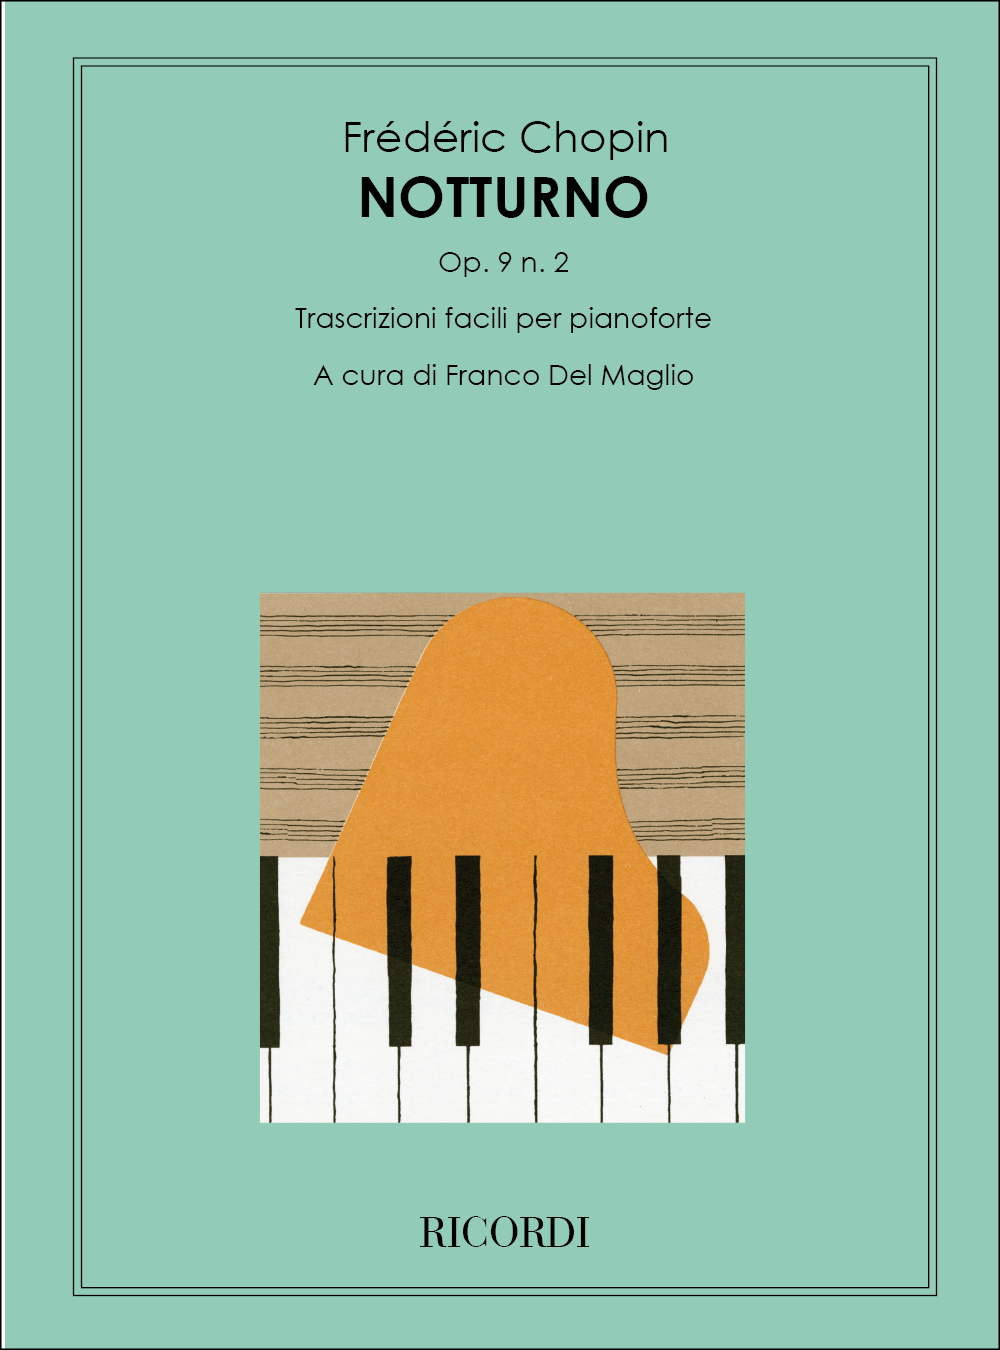 Frdric Chopin: Notturni Op. 9: N. 2 In Mi Bemolle: Piano